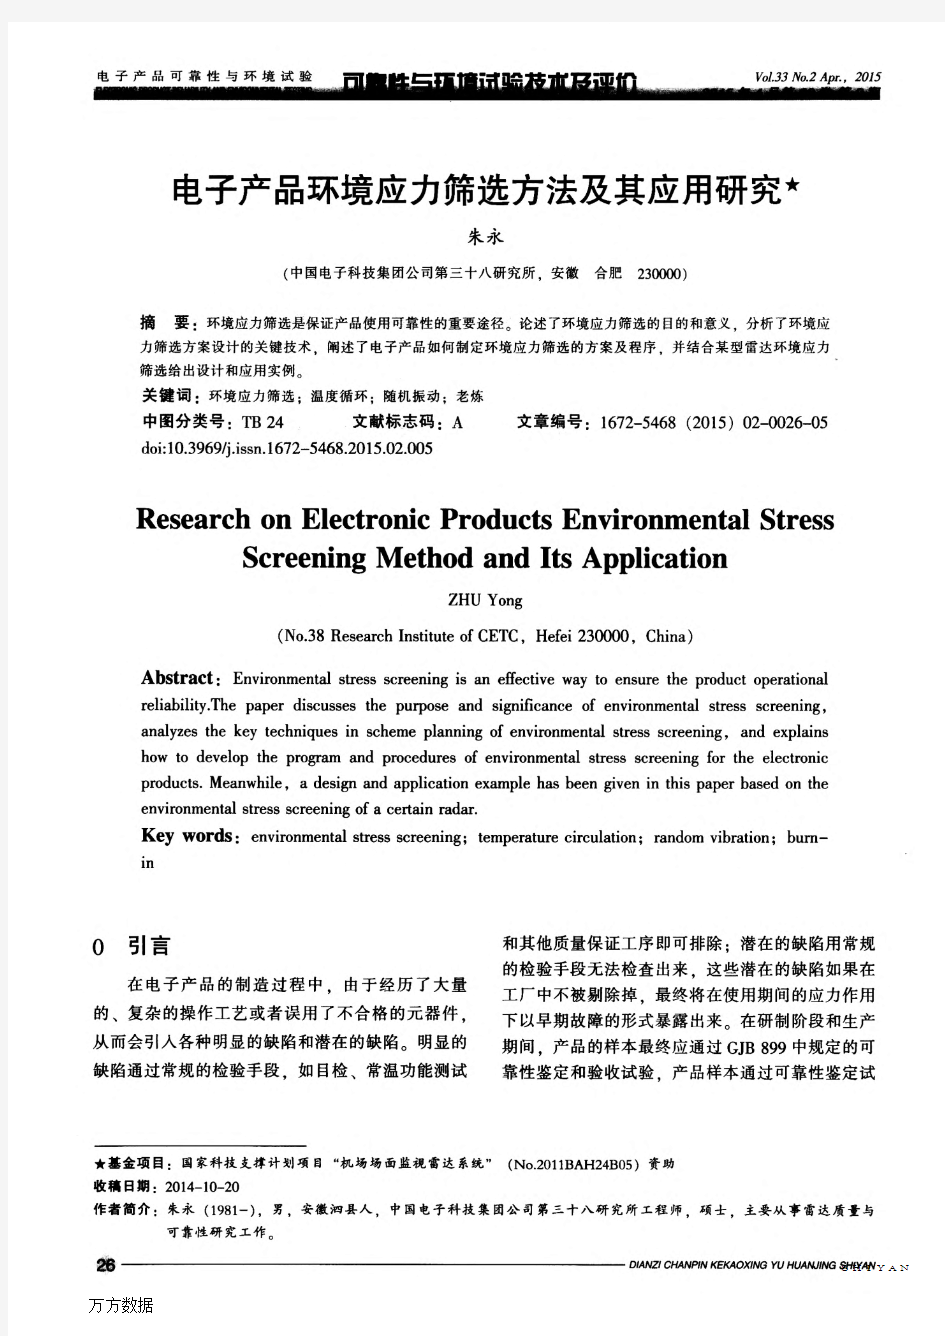 电子产品环境应力筛选方法及其应用研究